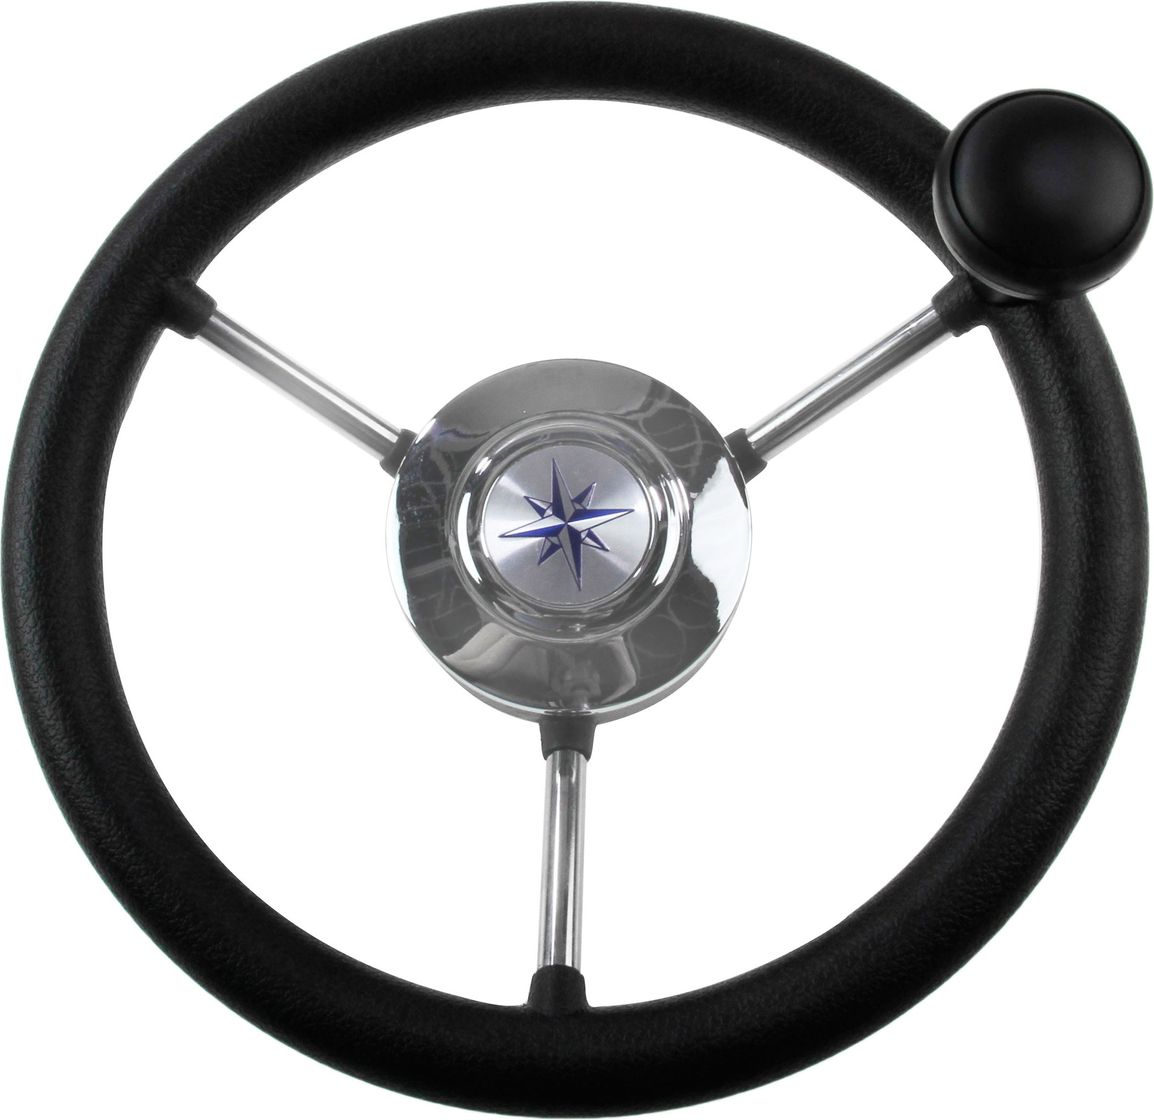 Рулевое колесо LIPARI обод черный, спицы серебряные д. 280 мм со спинером VN828050-01 рулевое колесо leader tanegum обод серебряные спицы д 360 мм vn7360 01